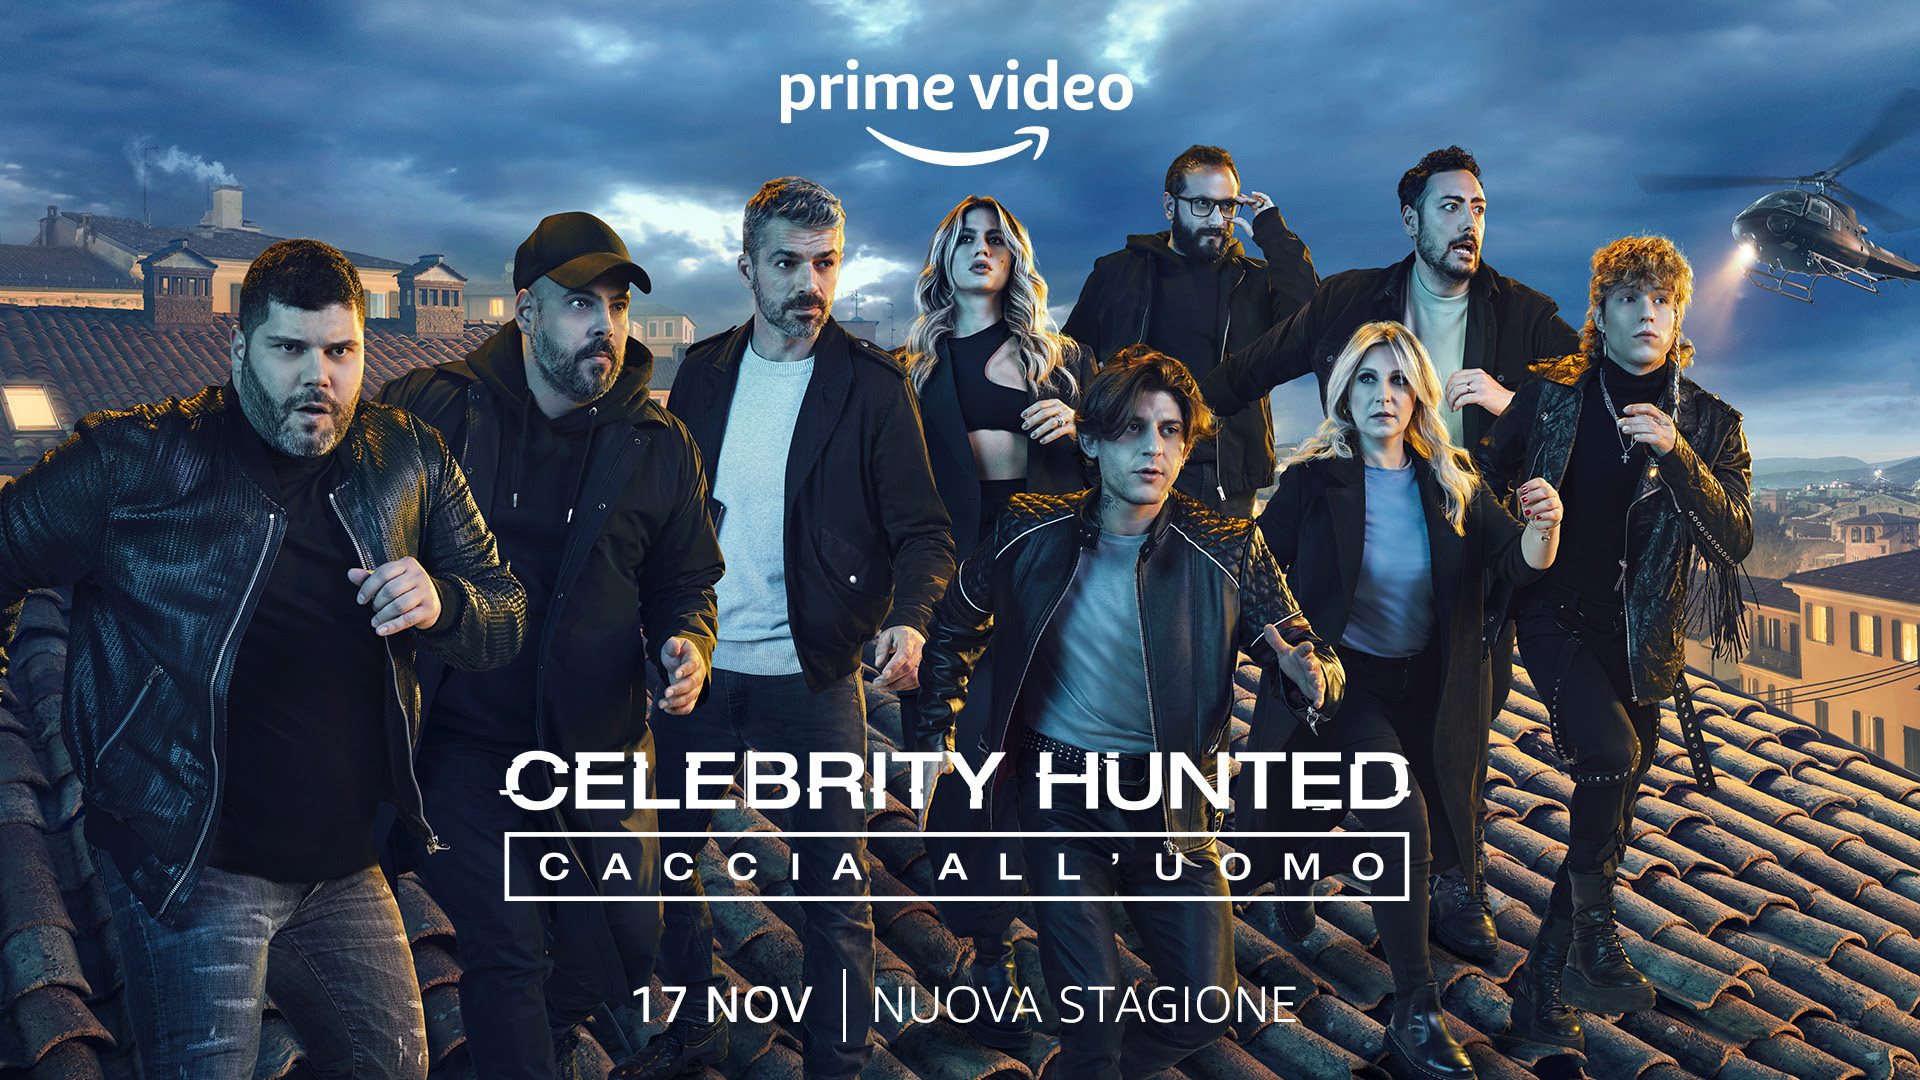 Celebrity Hunted – Caccia all’uomo 3: Partecipa alla caccia al nuovo trailer